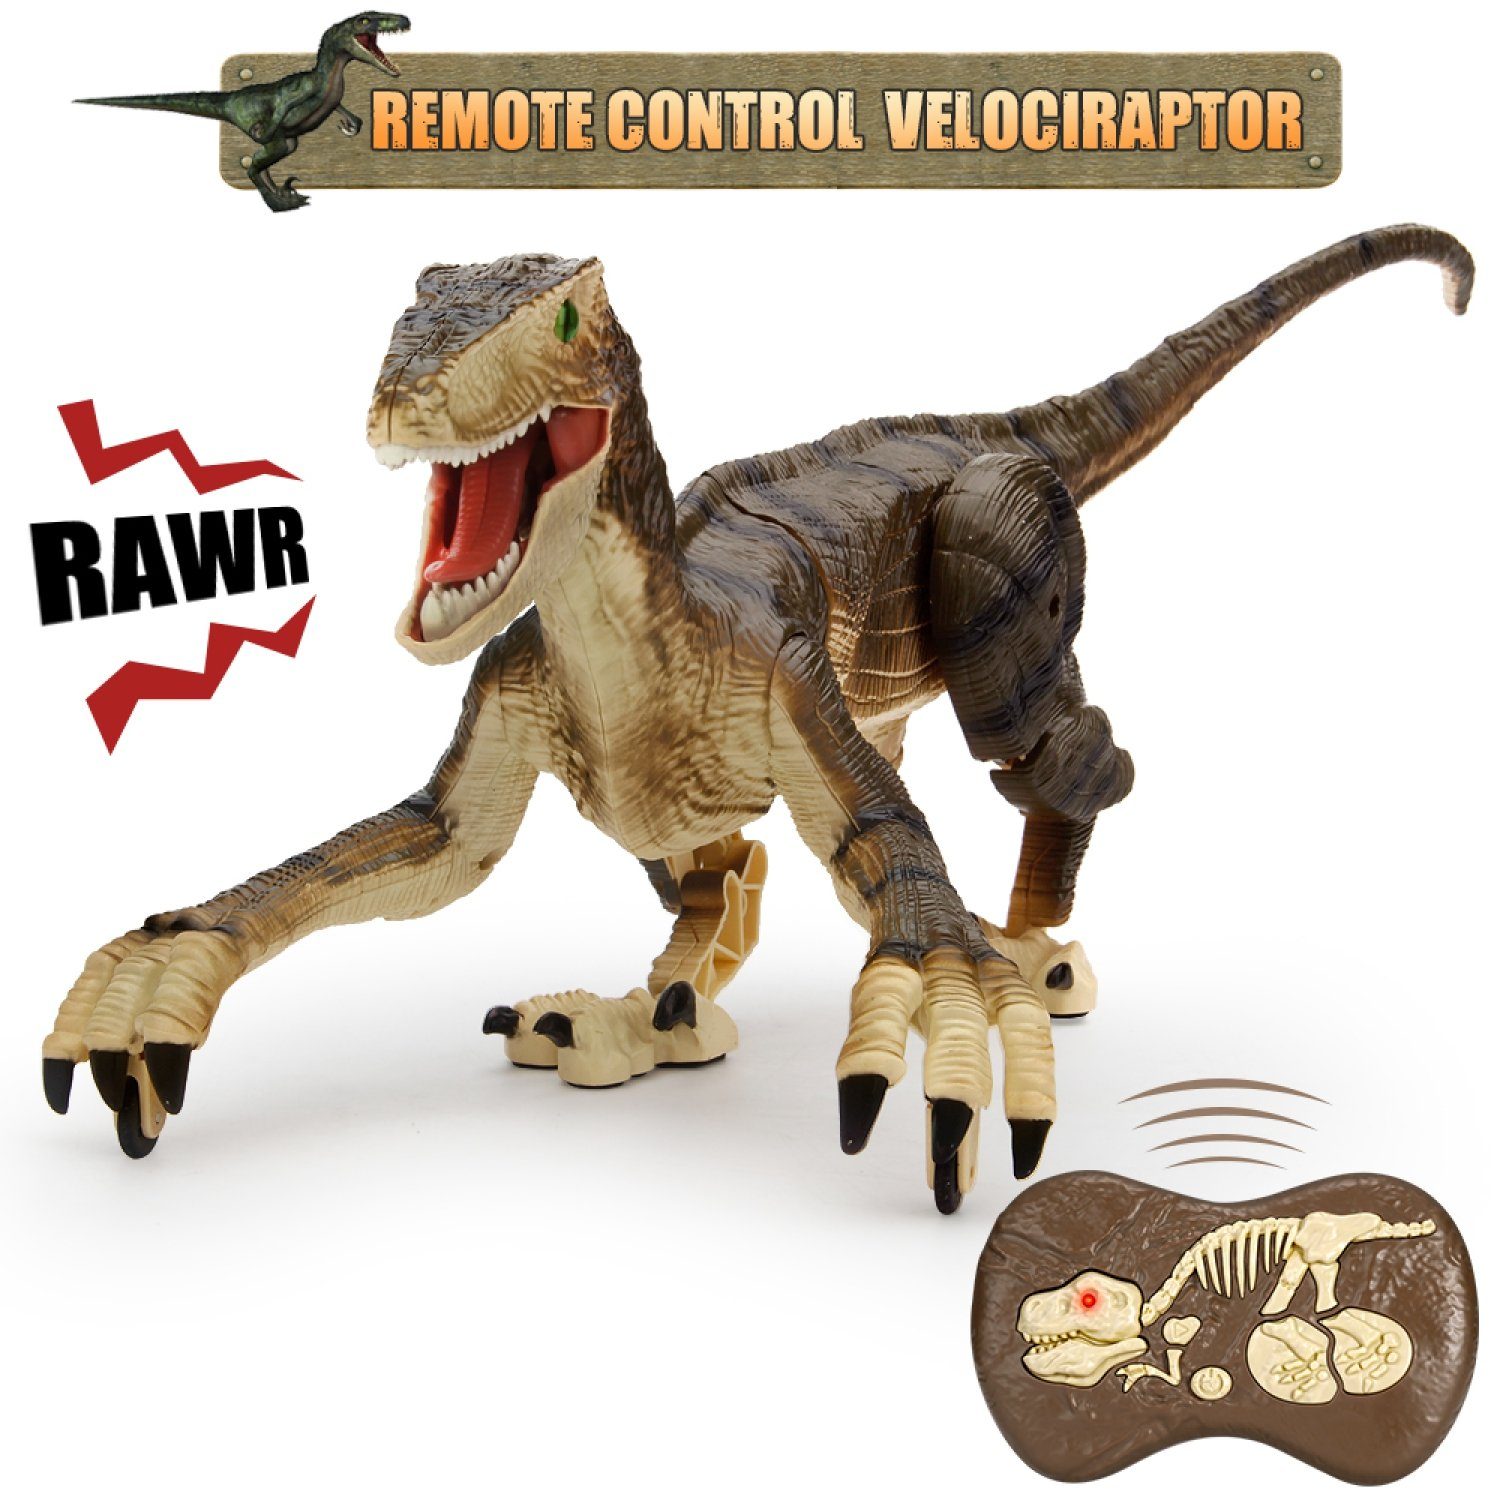 Esun Spielfigur »Fernbedienung Dinosaurier Spielzeug,Elektronisch Gehender Velociraptor mit LED Beleuchtung&Realistische Simulation Geräusche,2,4 GHz